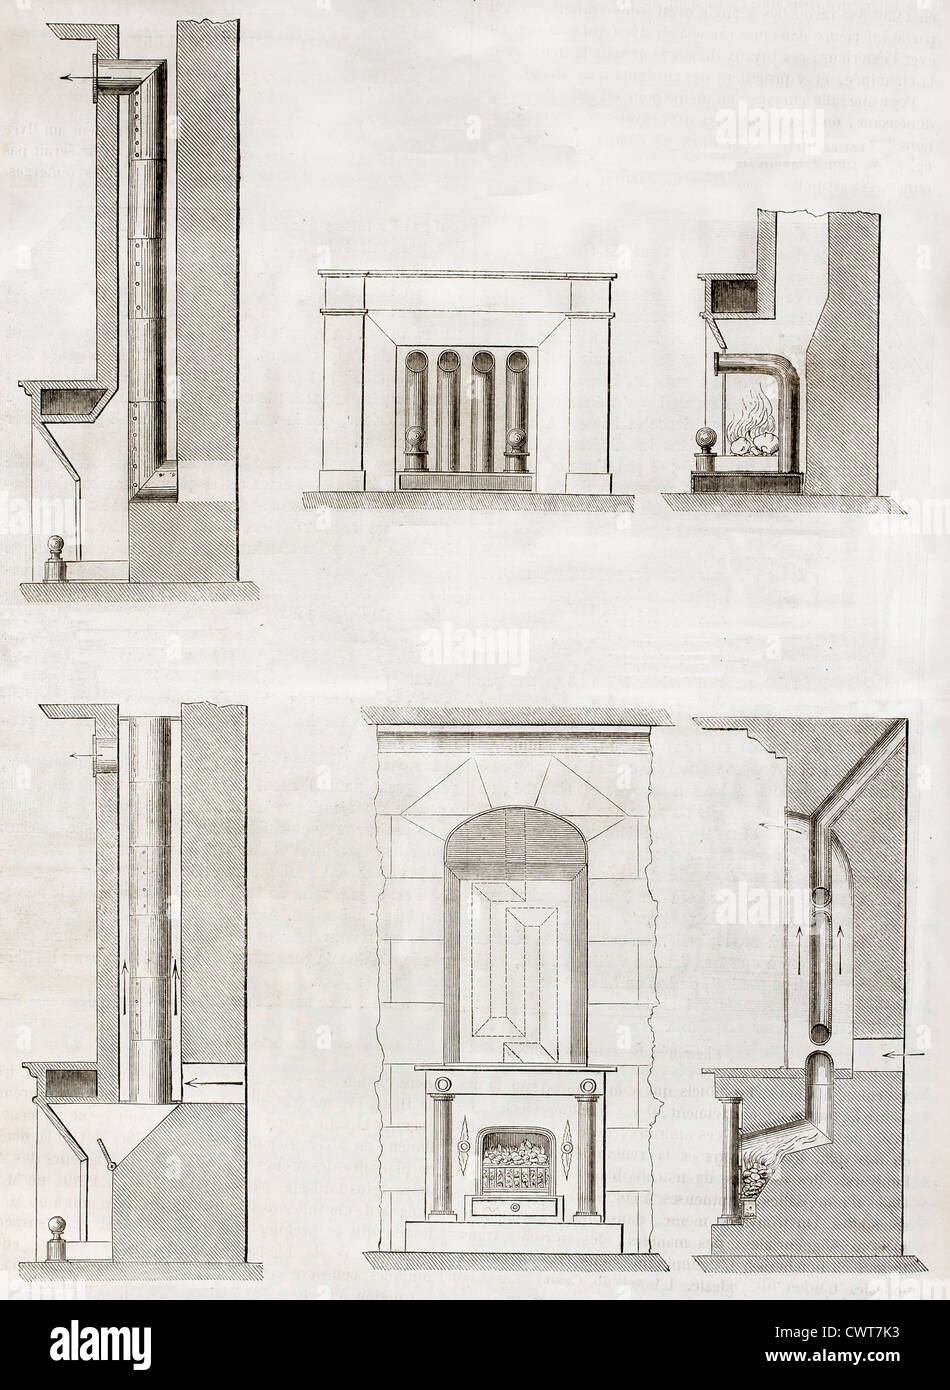 Schéma de l'ancien système de chauffage maison illustrations Banque D'Images